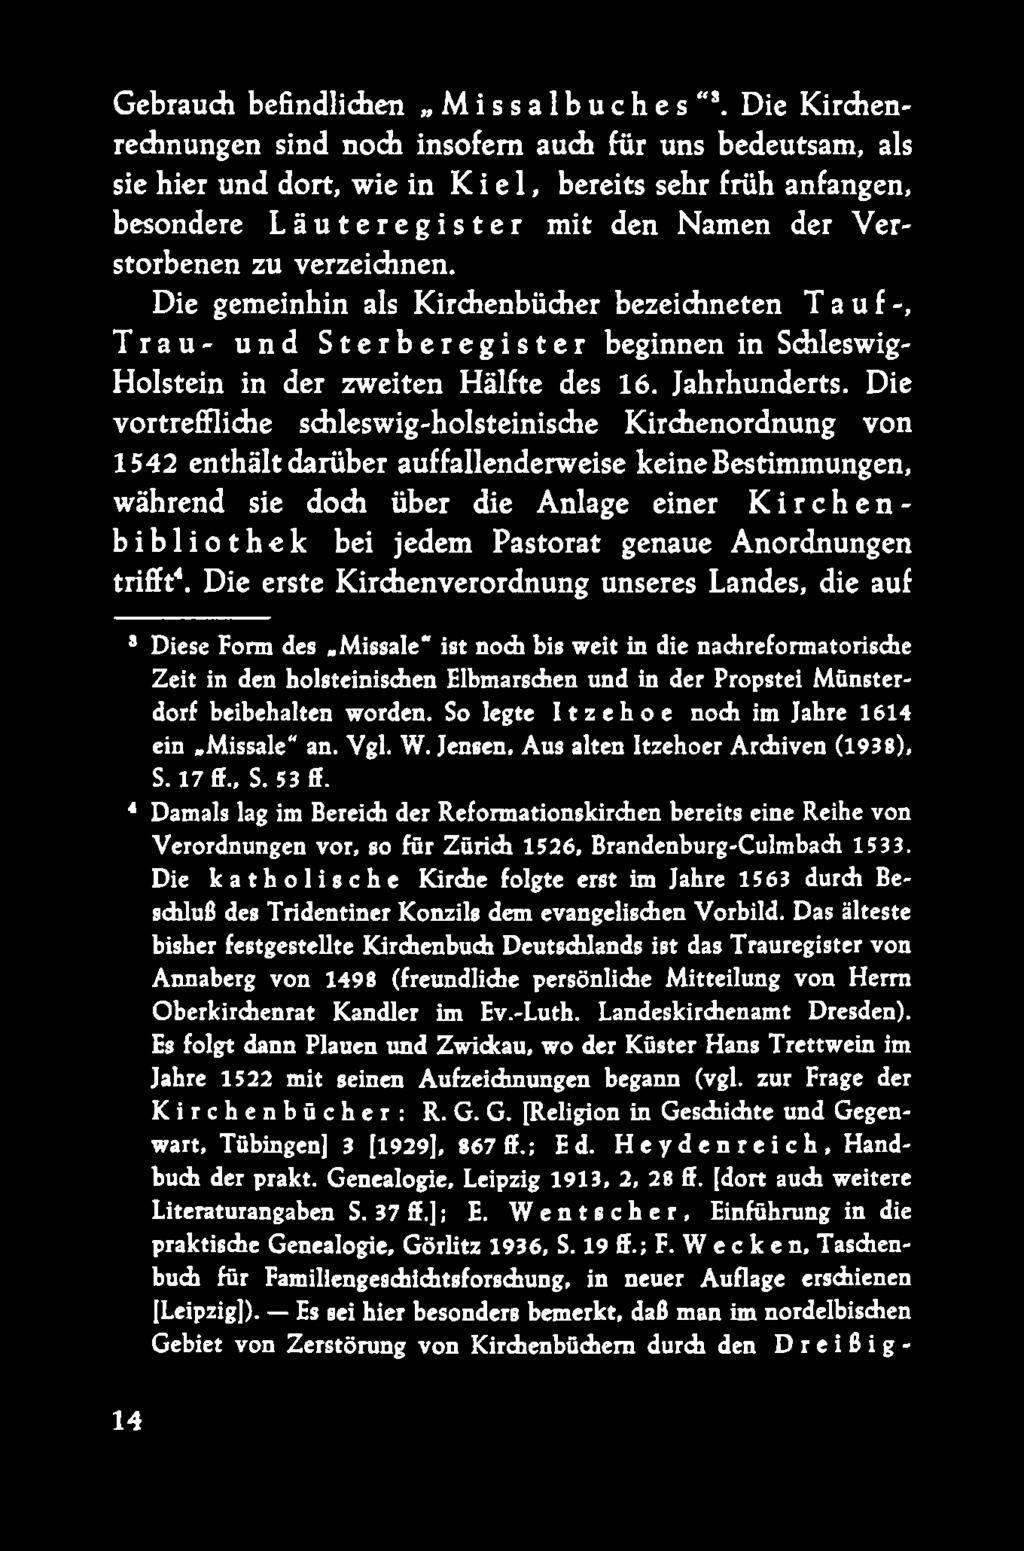 Die gemeinhin als Kirchenbücher bezeichneten Tauf-, Trau- und Sterberegister beginnen in Schleswig- Holstein in der zweiten Hälfte des 16. Jahrhunderts.